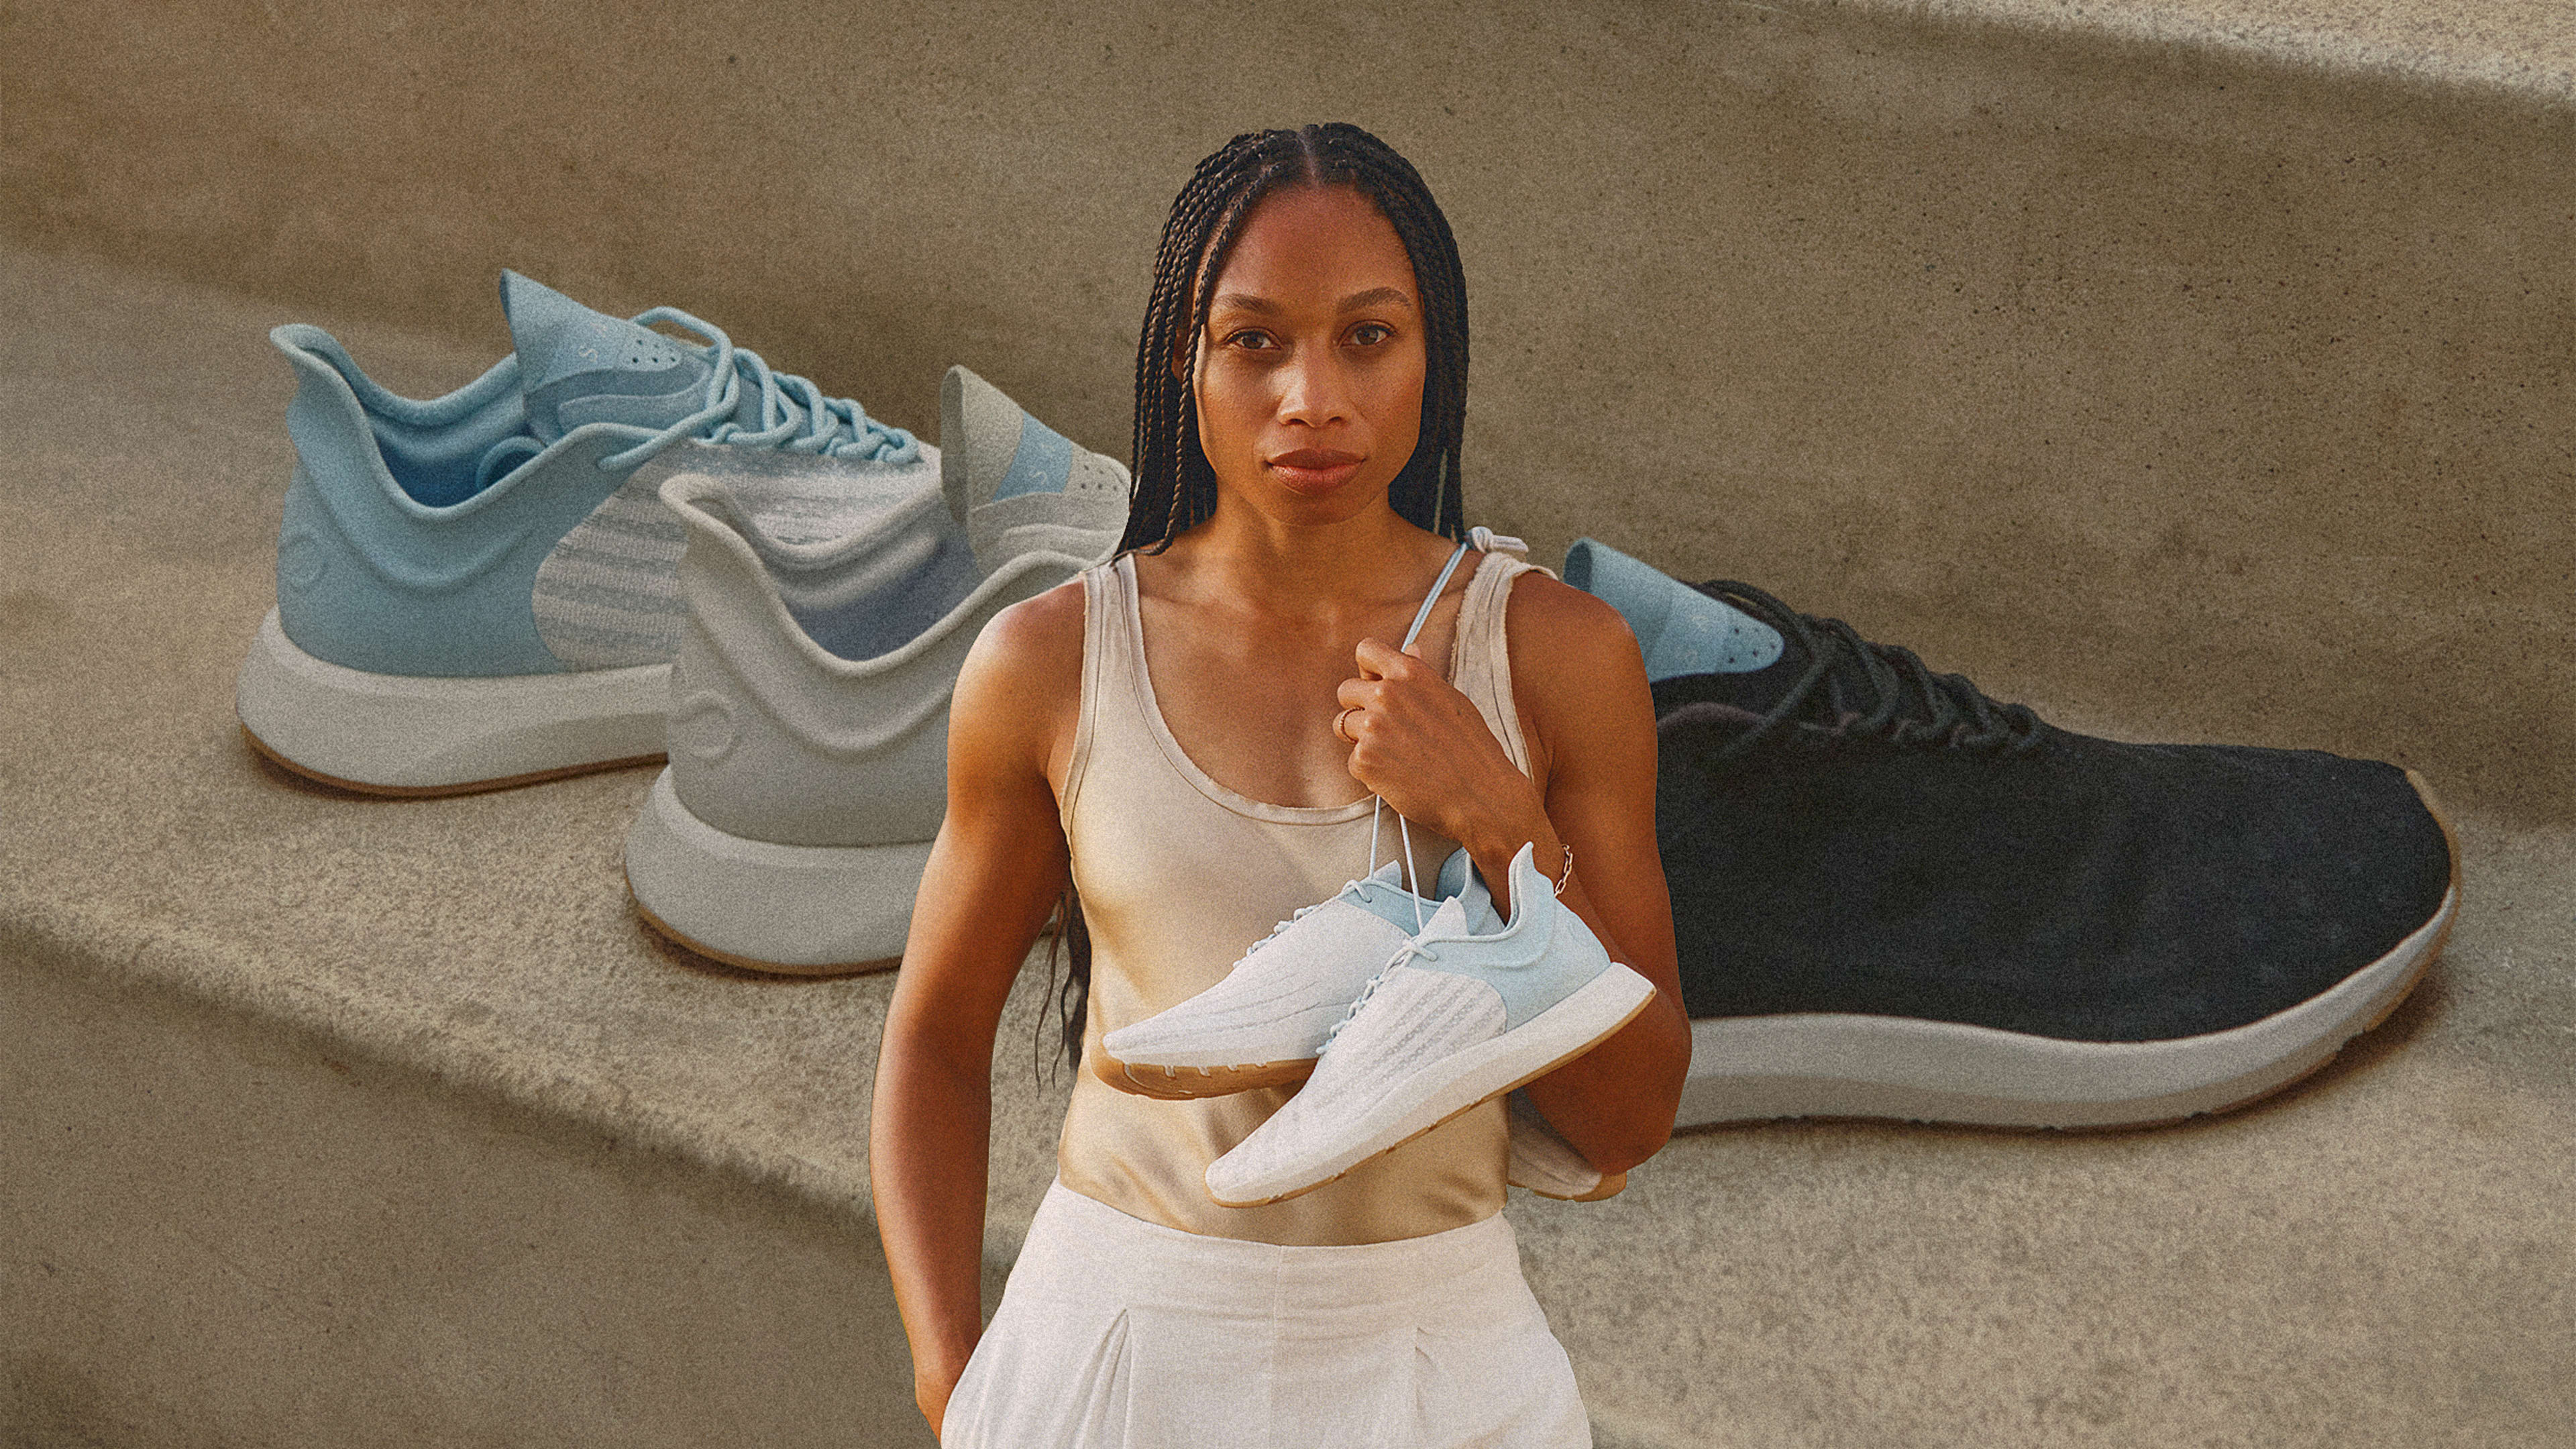 Sneakers are often designed for men by men. So track star Allyson Felix built her own